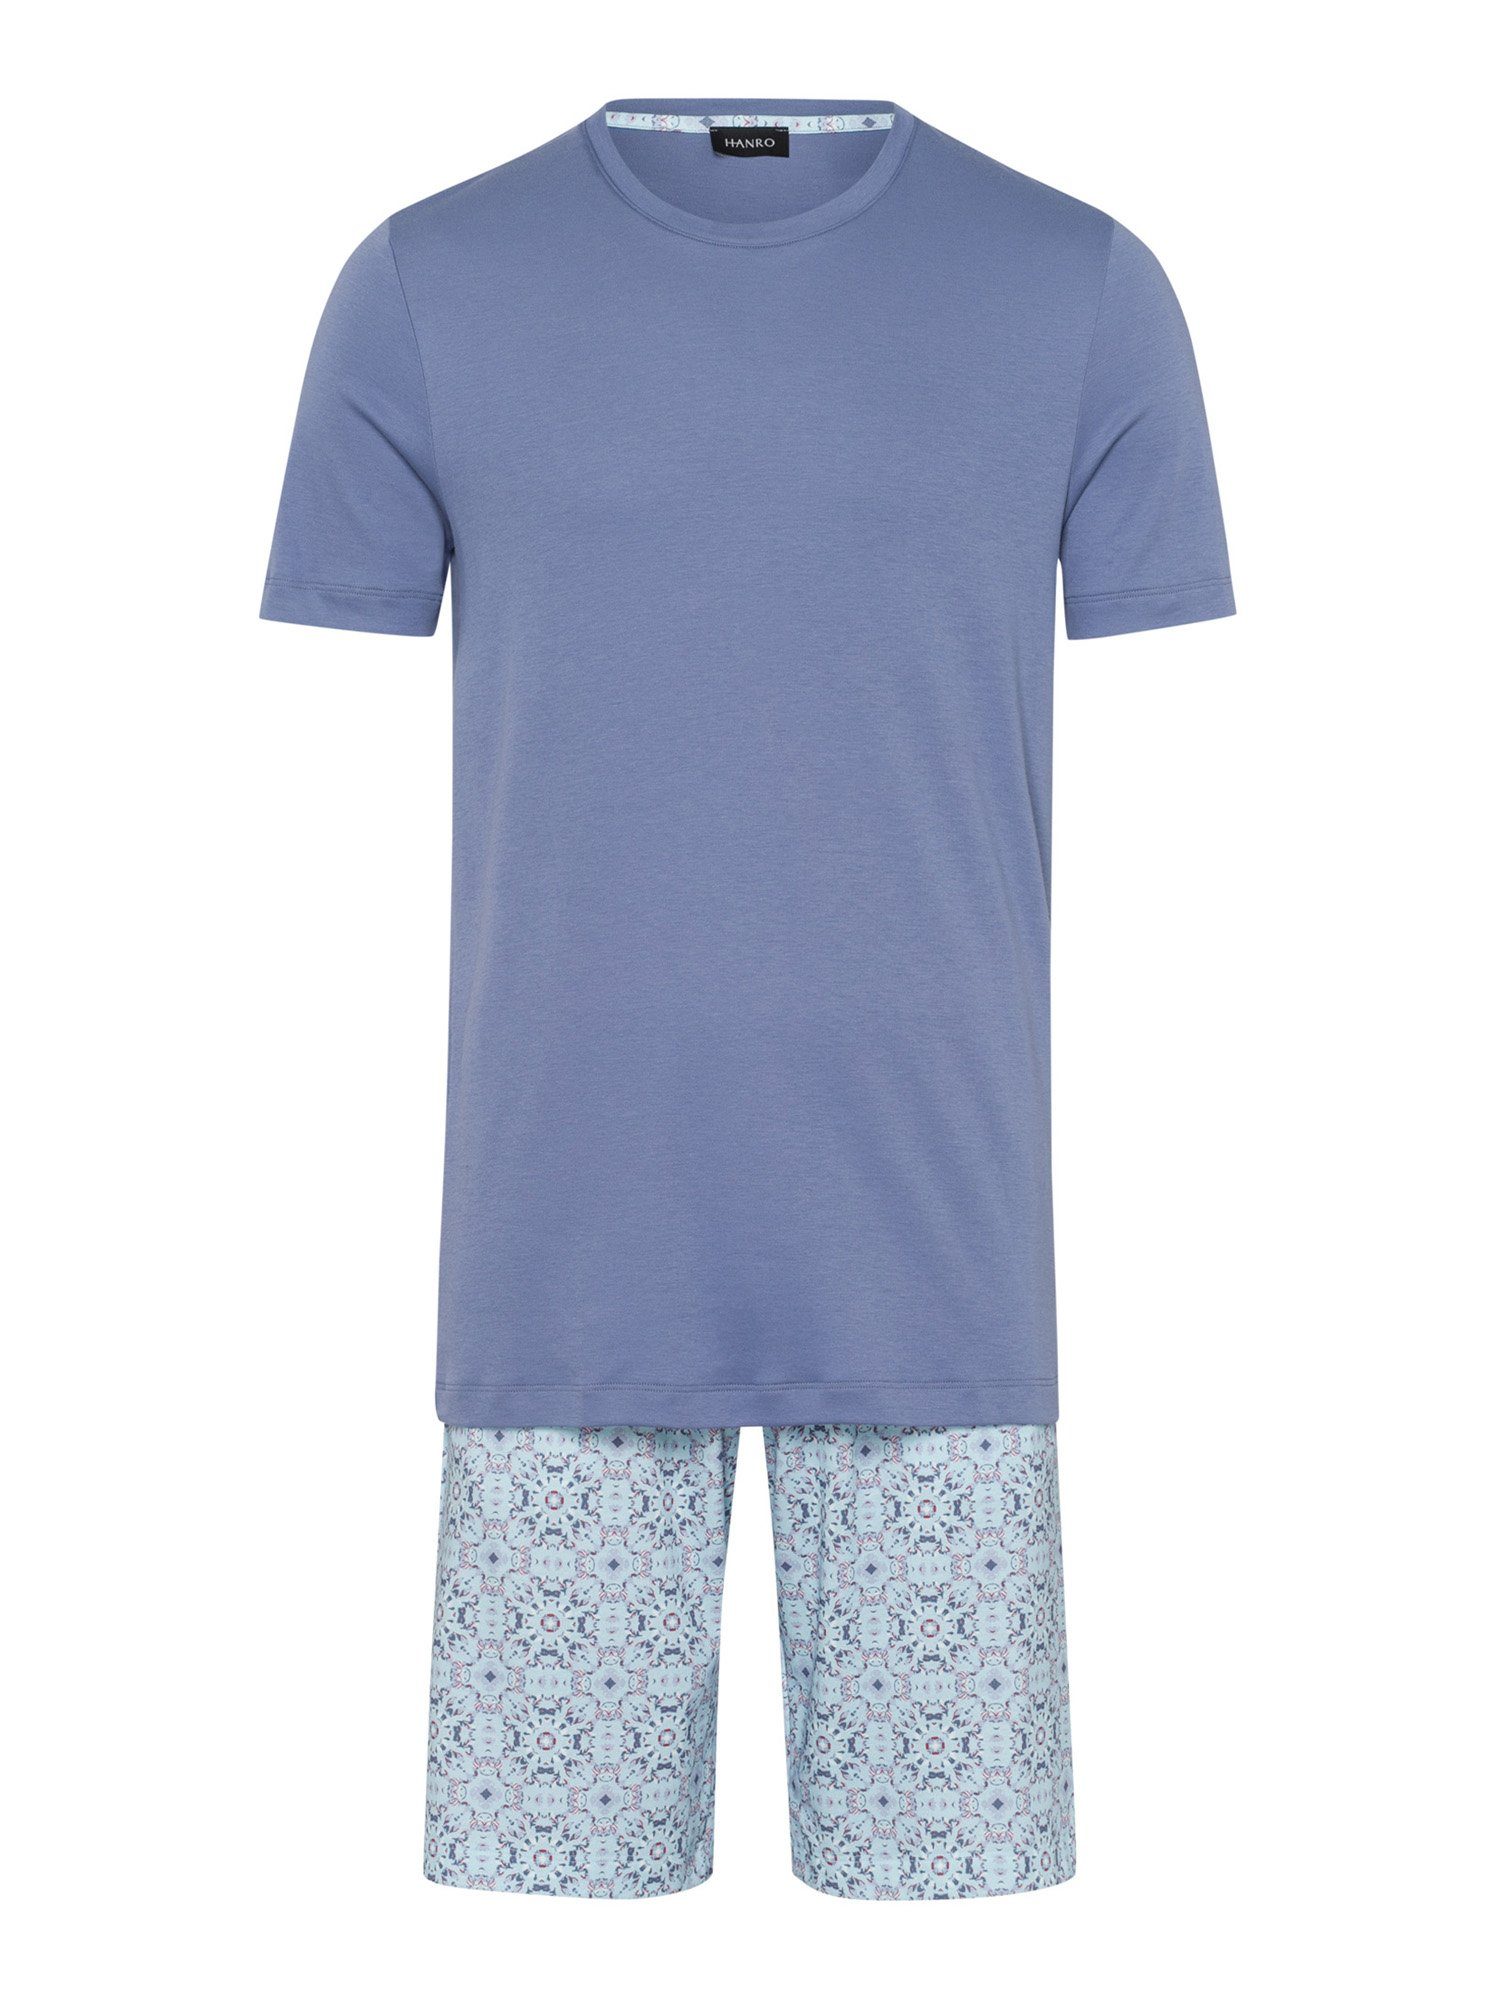 Hanro Pyjama Kurzarm Night & Day blue tile print